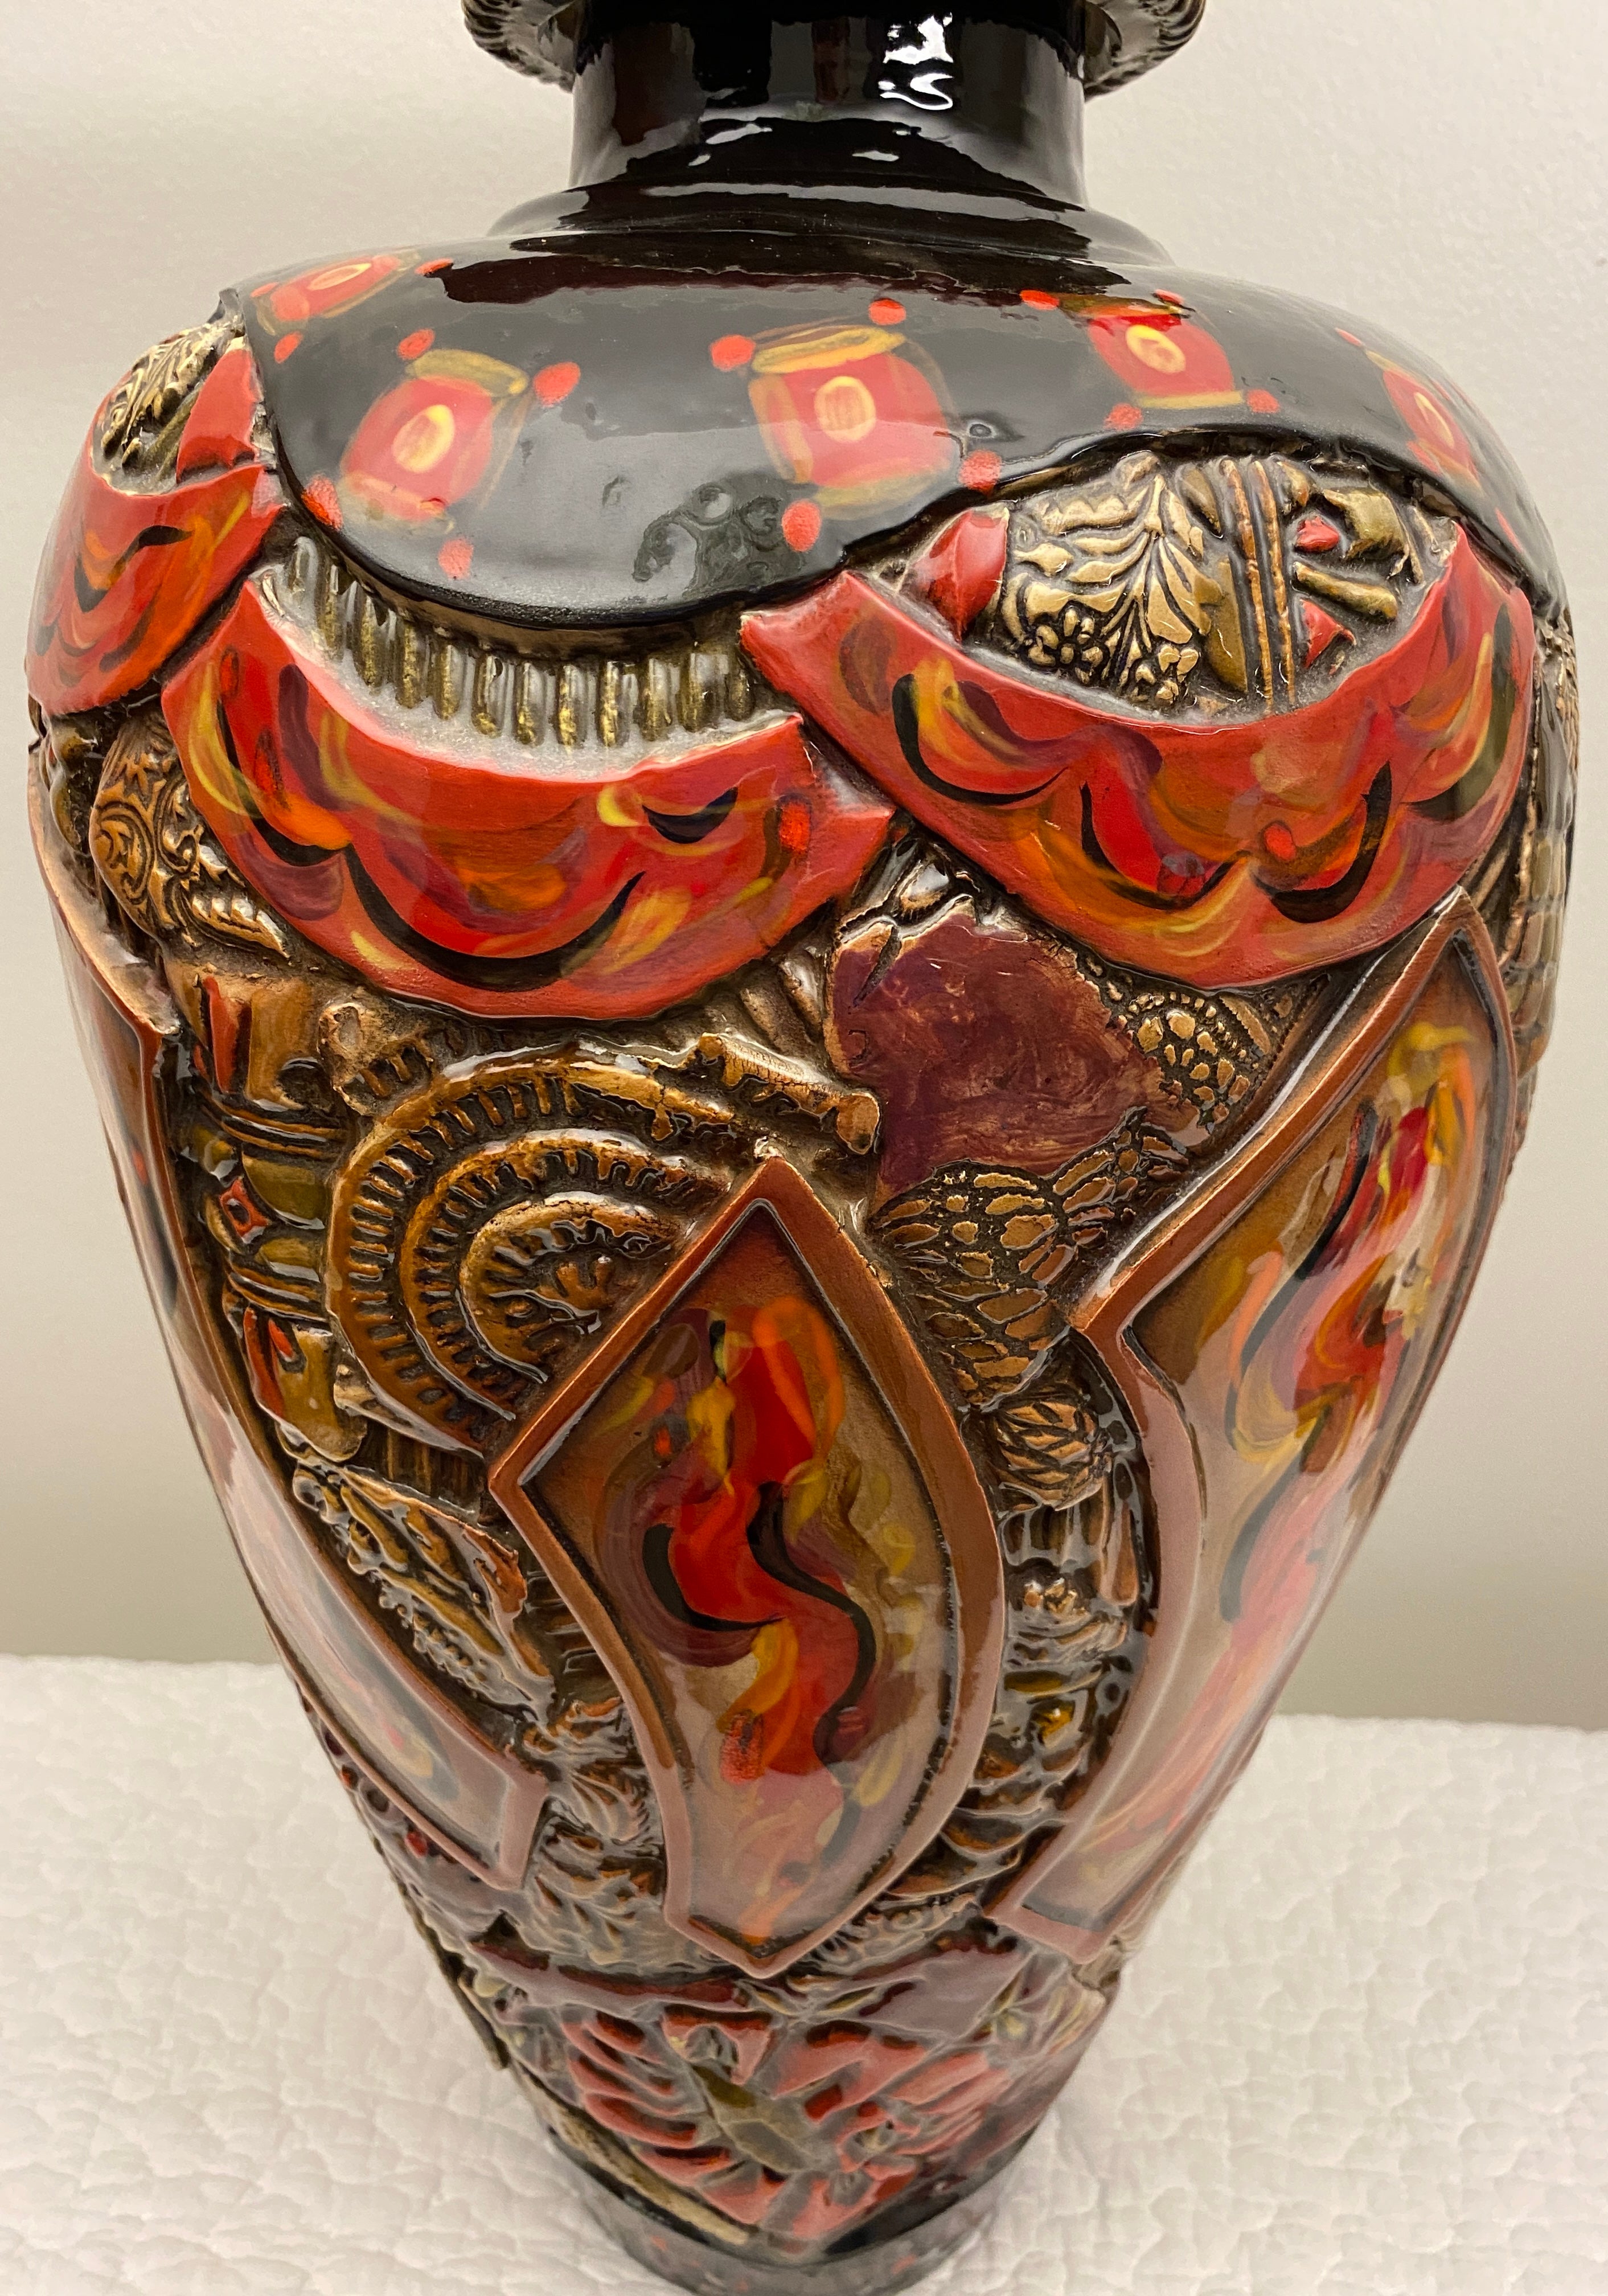 Große Vase oder Gefäß von Studio Pottery im japanischen Stil. Diese große Keramikvase im japanischen Stil ist handgefertigt im organischen, zeitgenössischen, Vintage- und Mid-Century Modern-Stil.

Extra große Bodenvase mit schmalem Boden.